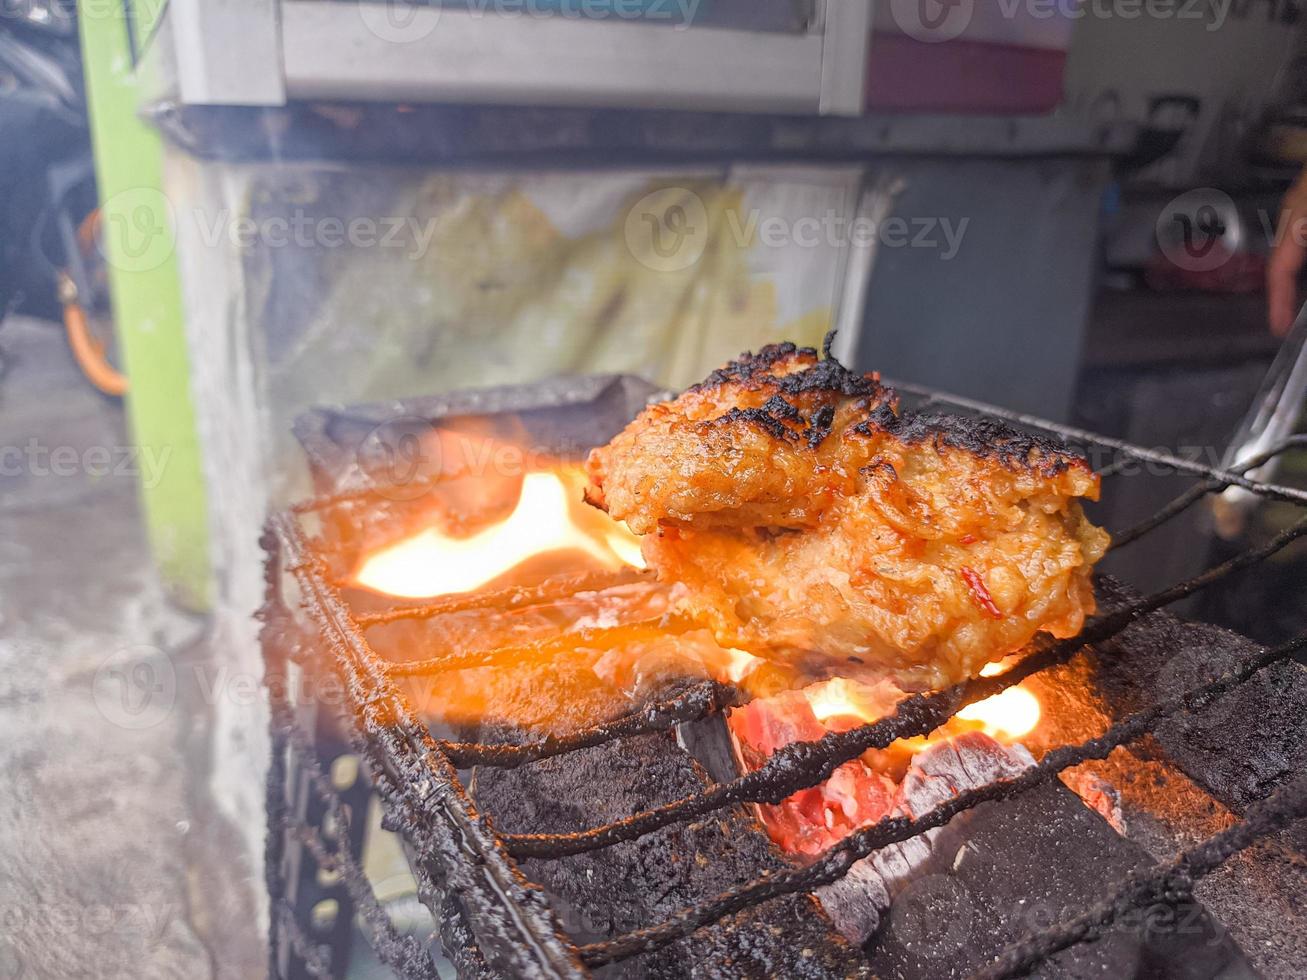 poitrine de poulet enveloppée de farine croustillante avec de délicieux assaisonnements épicés grillés sur du charbon de bois brûlant.un poulet grillé typique d'indonésie photo